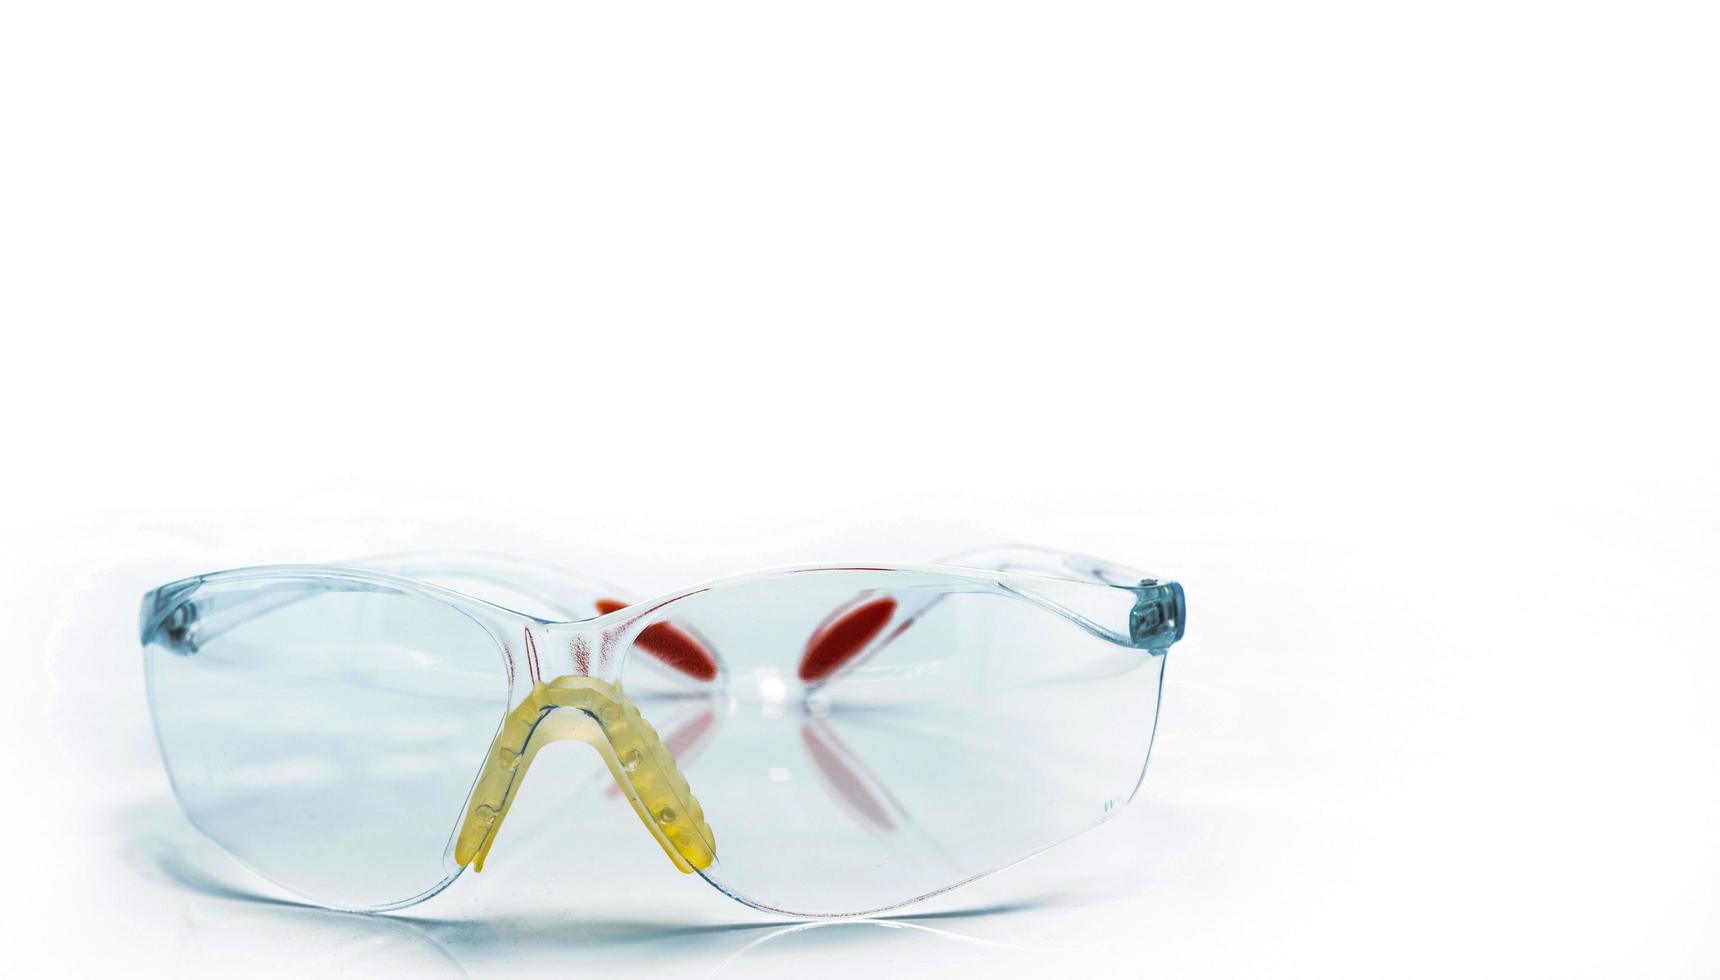 óculos de segurança plásticos isolados no fundo branco. óculos de proteção para os olhos do trabalhador no canteiro de obras ou na fábrica. ferramentas de segurança e proteção no local de trabalho. óculos de proteção uso em laboratório foto